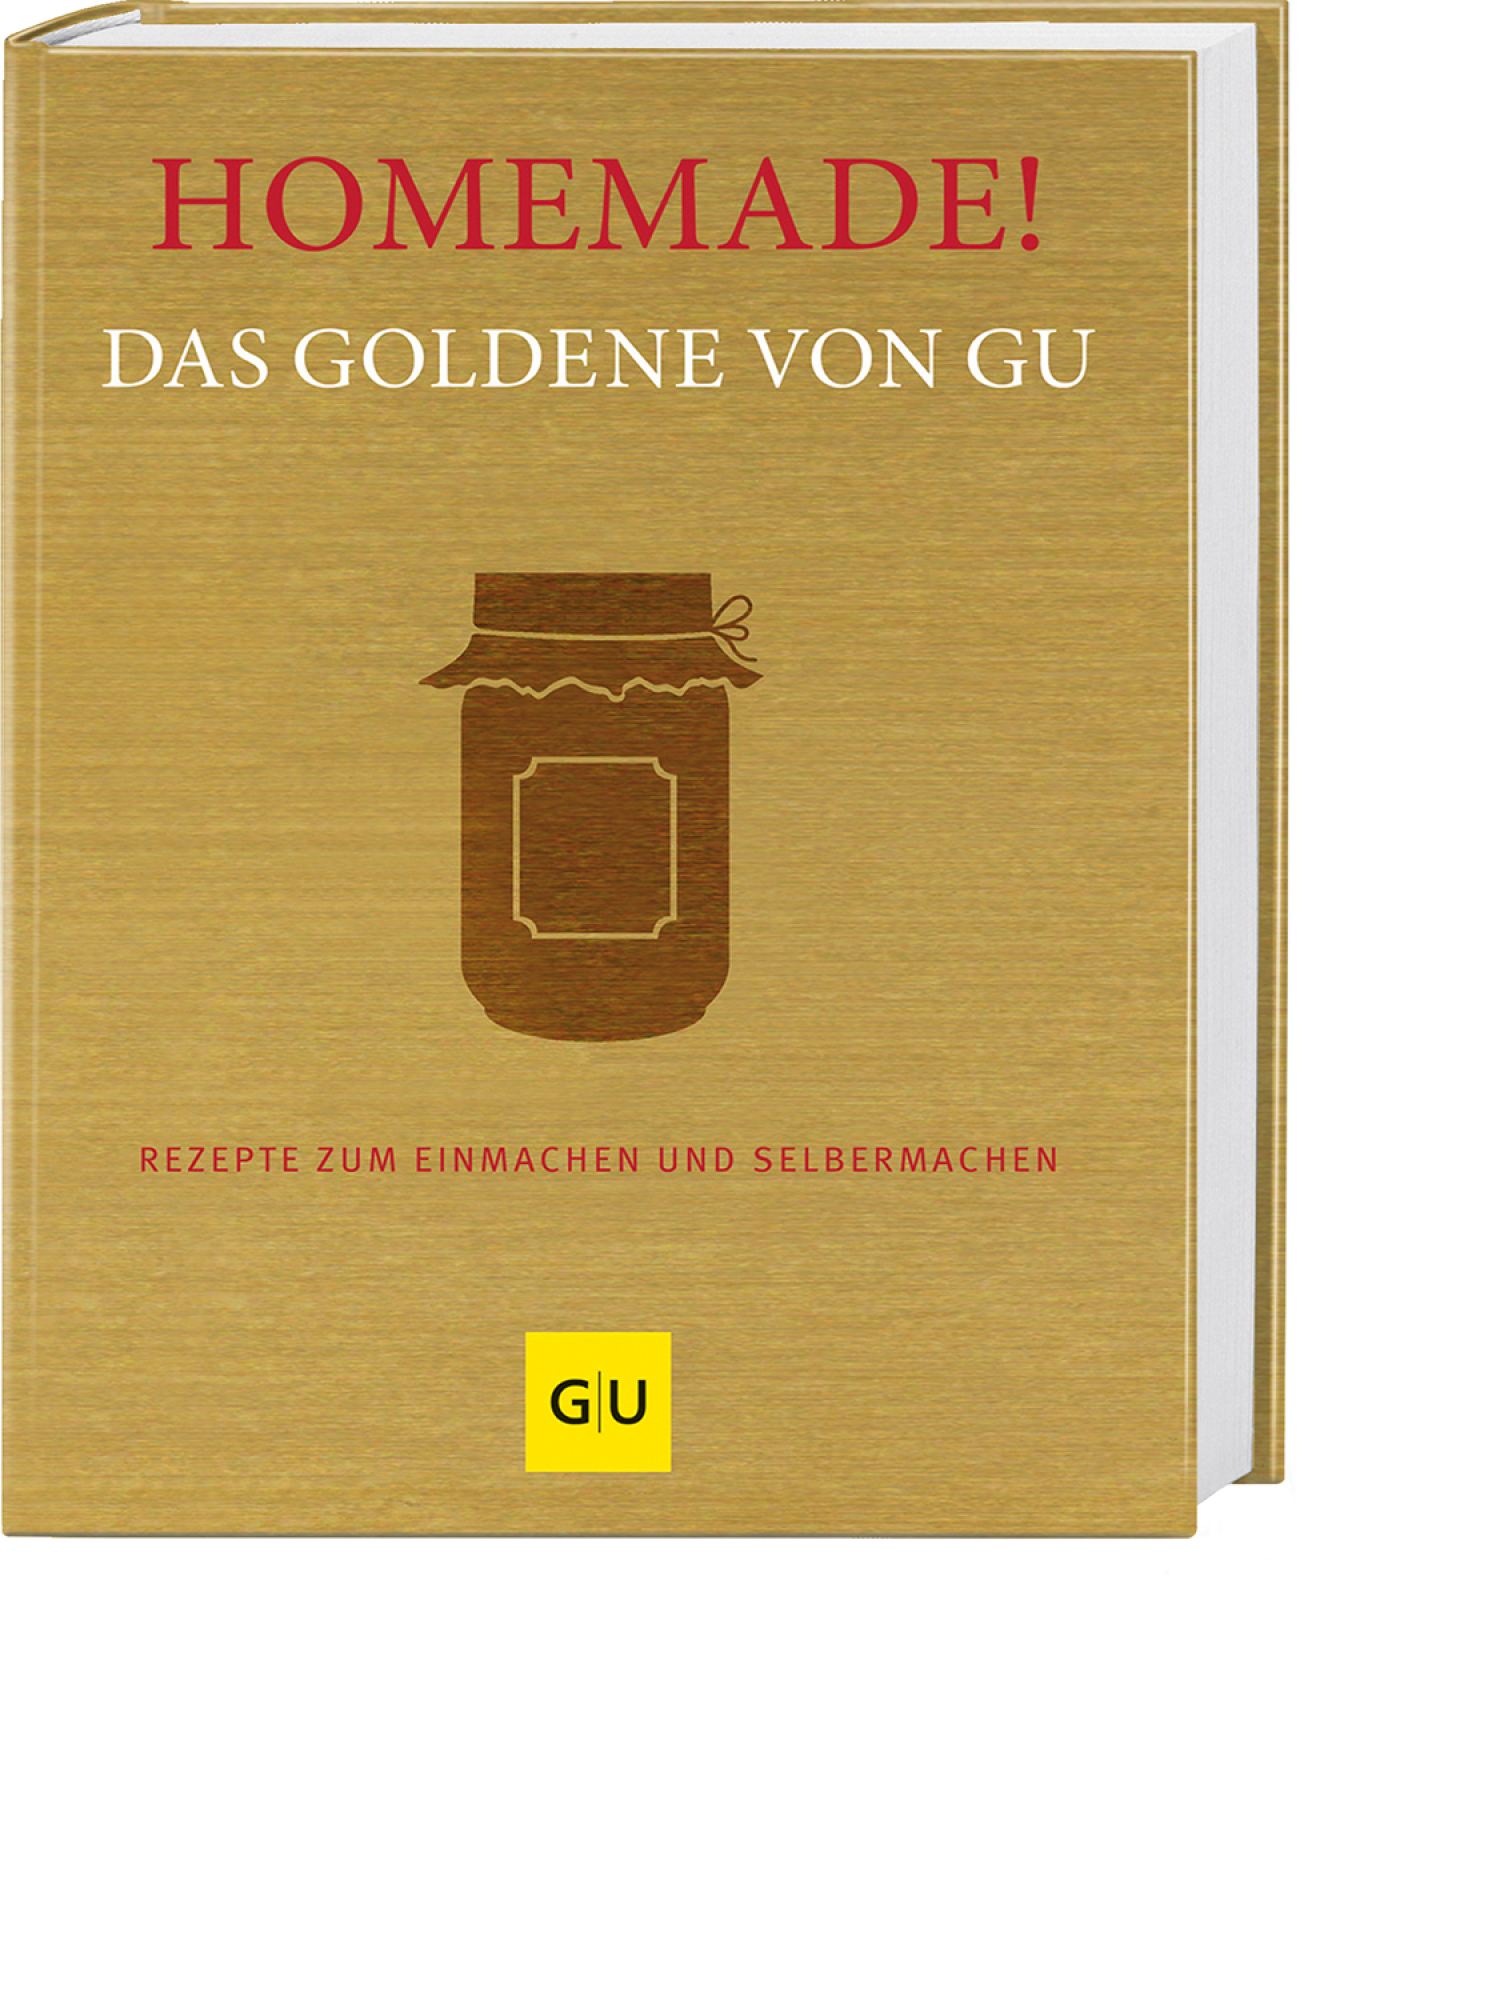 Homemade. Das goldene von GU, Produktbild 1